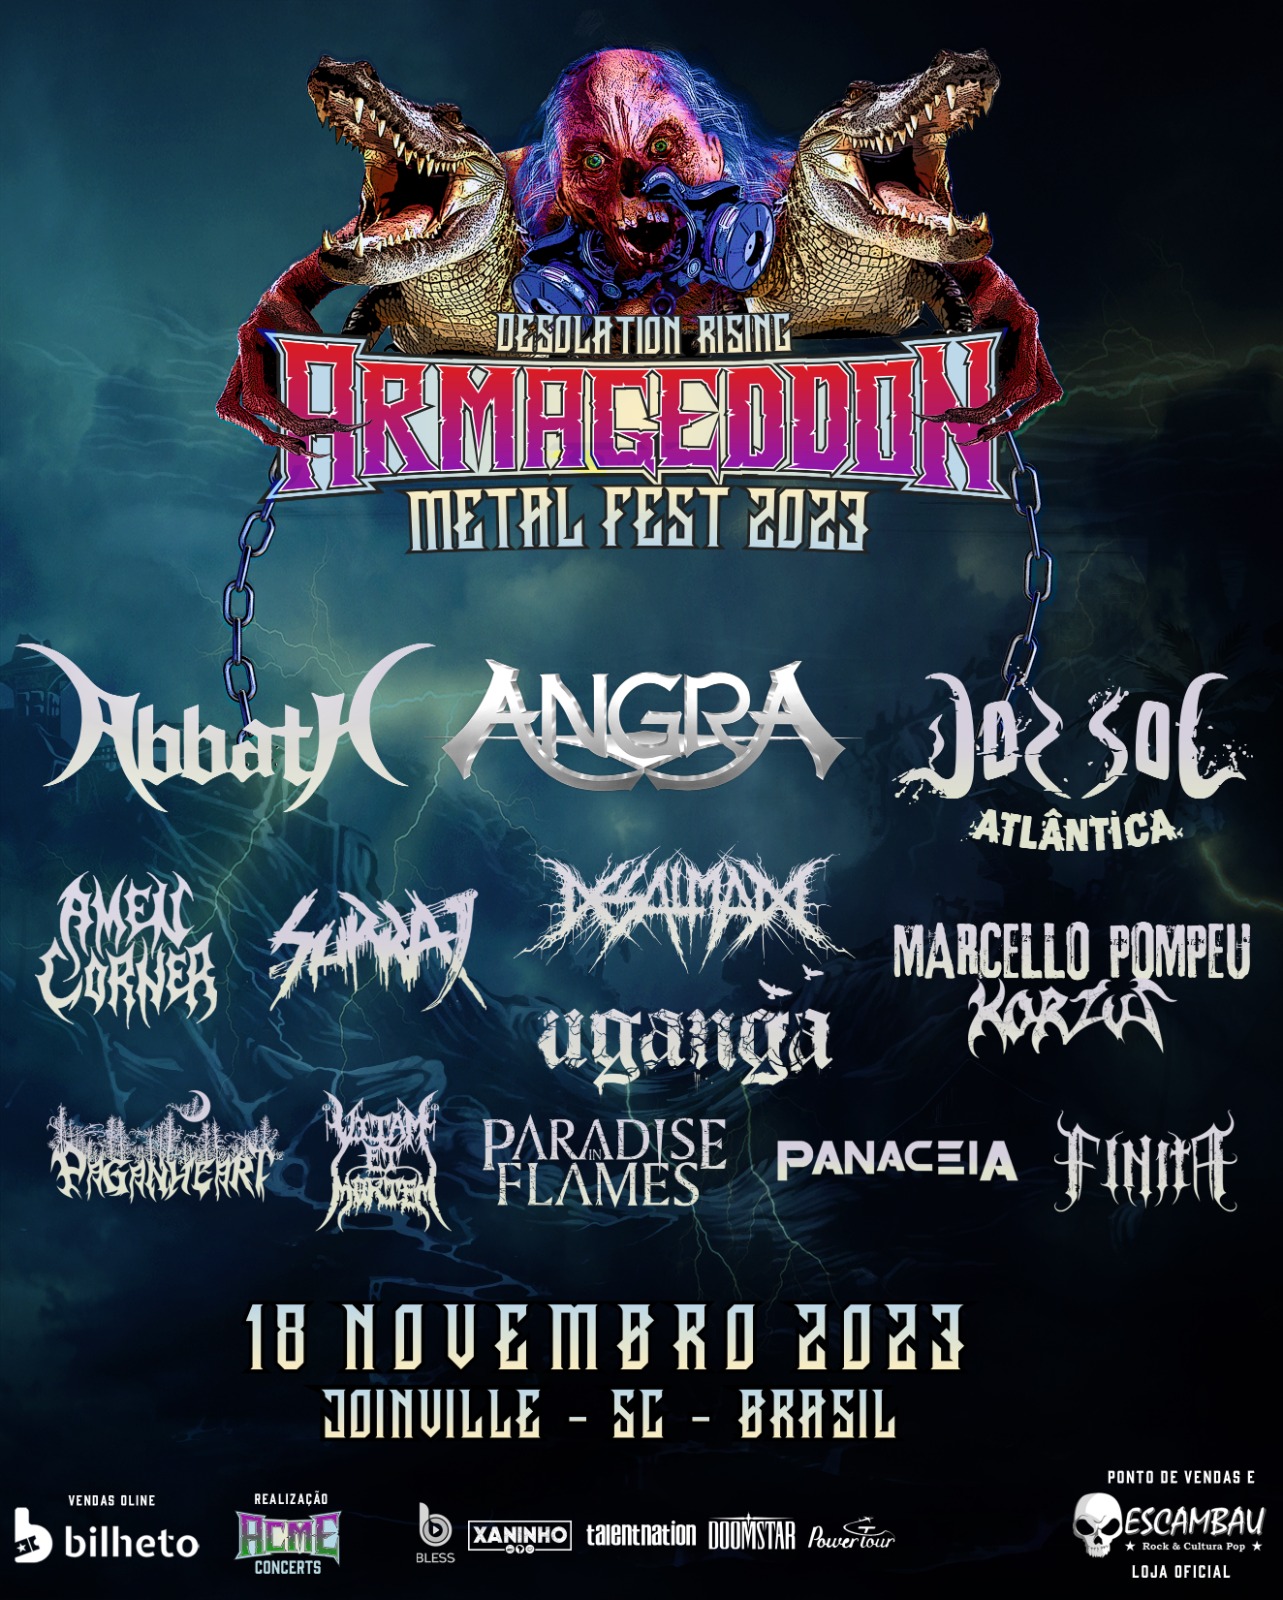 Armageddon Metal Fest busca melhor estrutura para o público e altera local do evento